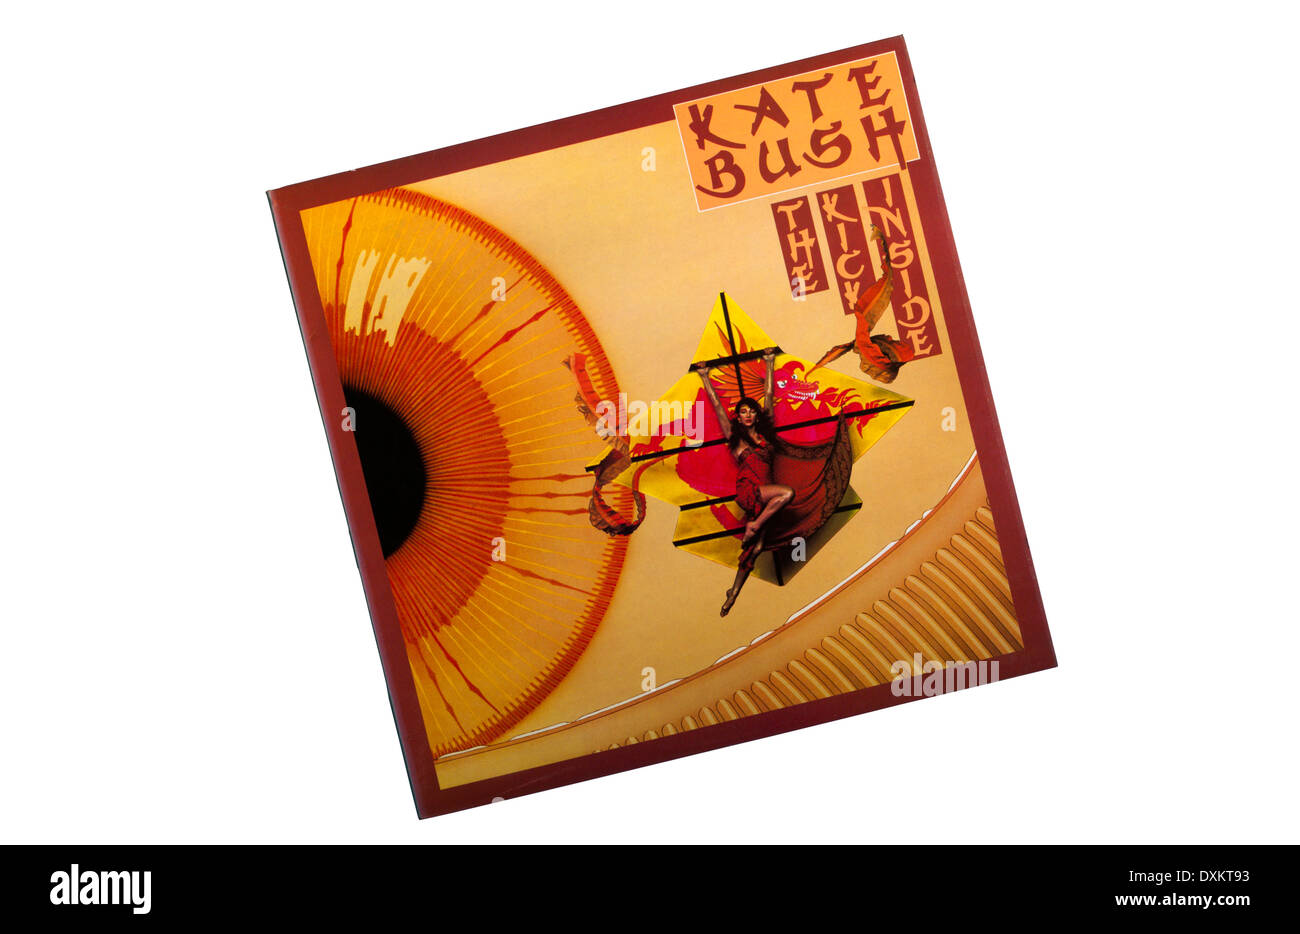 Le coup de l'intérieur a été le premier album de auteur-compositeur-interprète et musicien britannique Kate Bush. Il a été publié en 1978. Banque D'Images